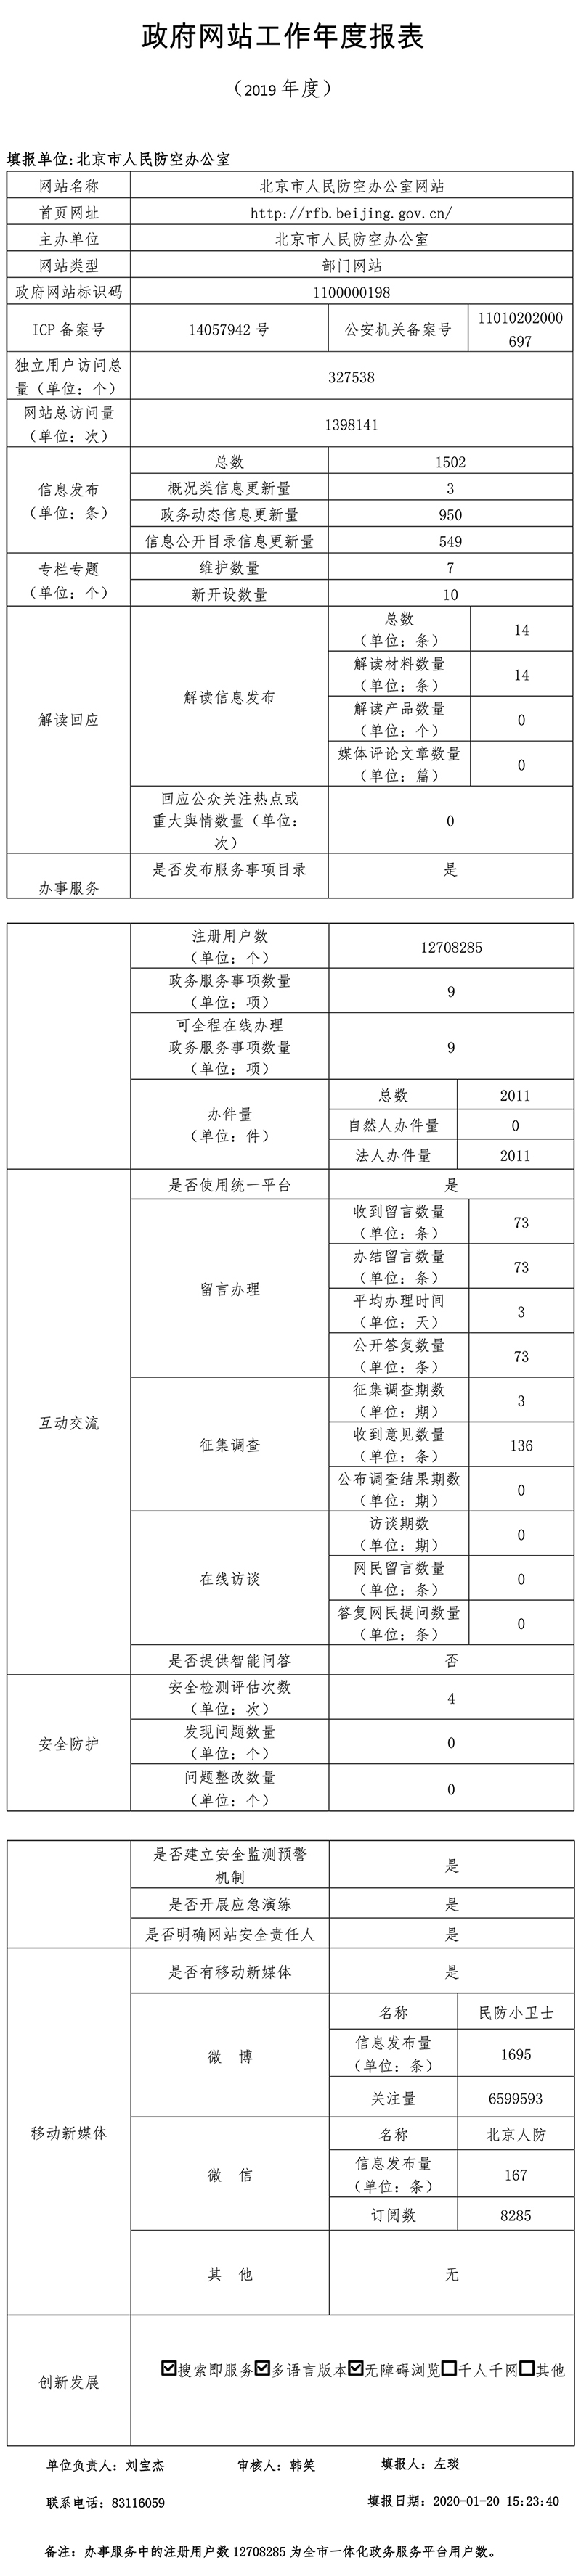 北京市人民防空办公室2019年政府网站年度工作报表